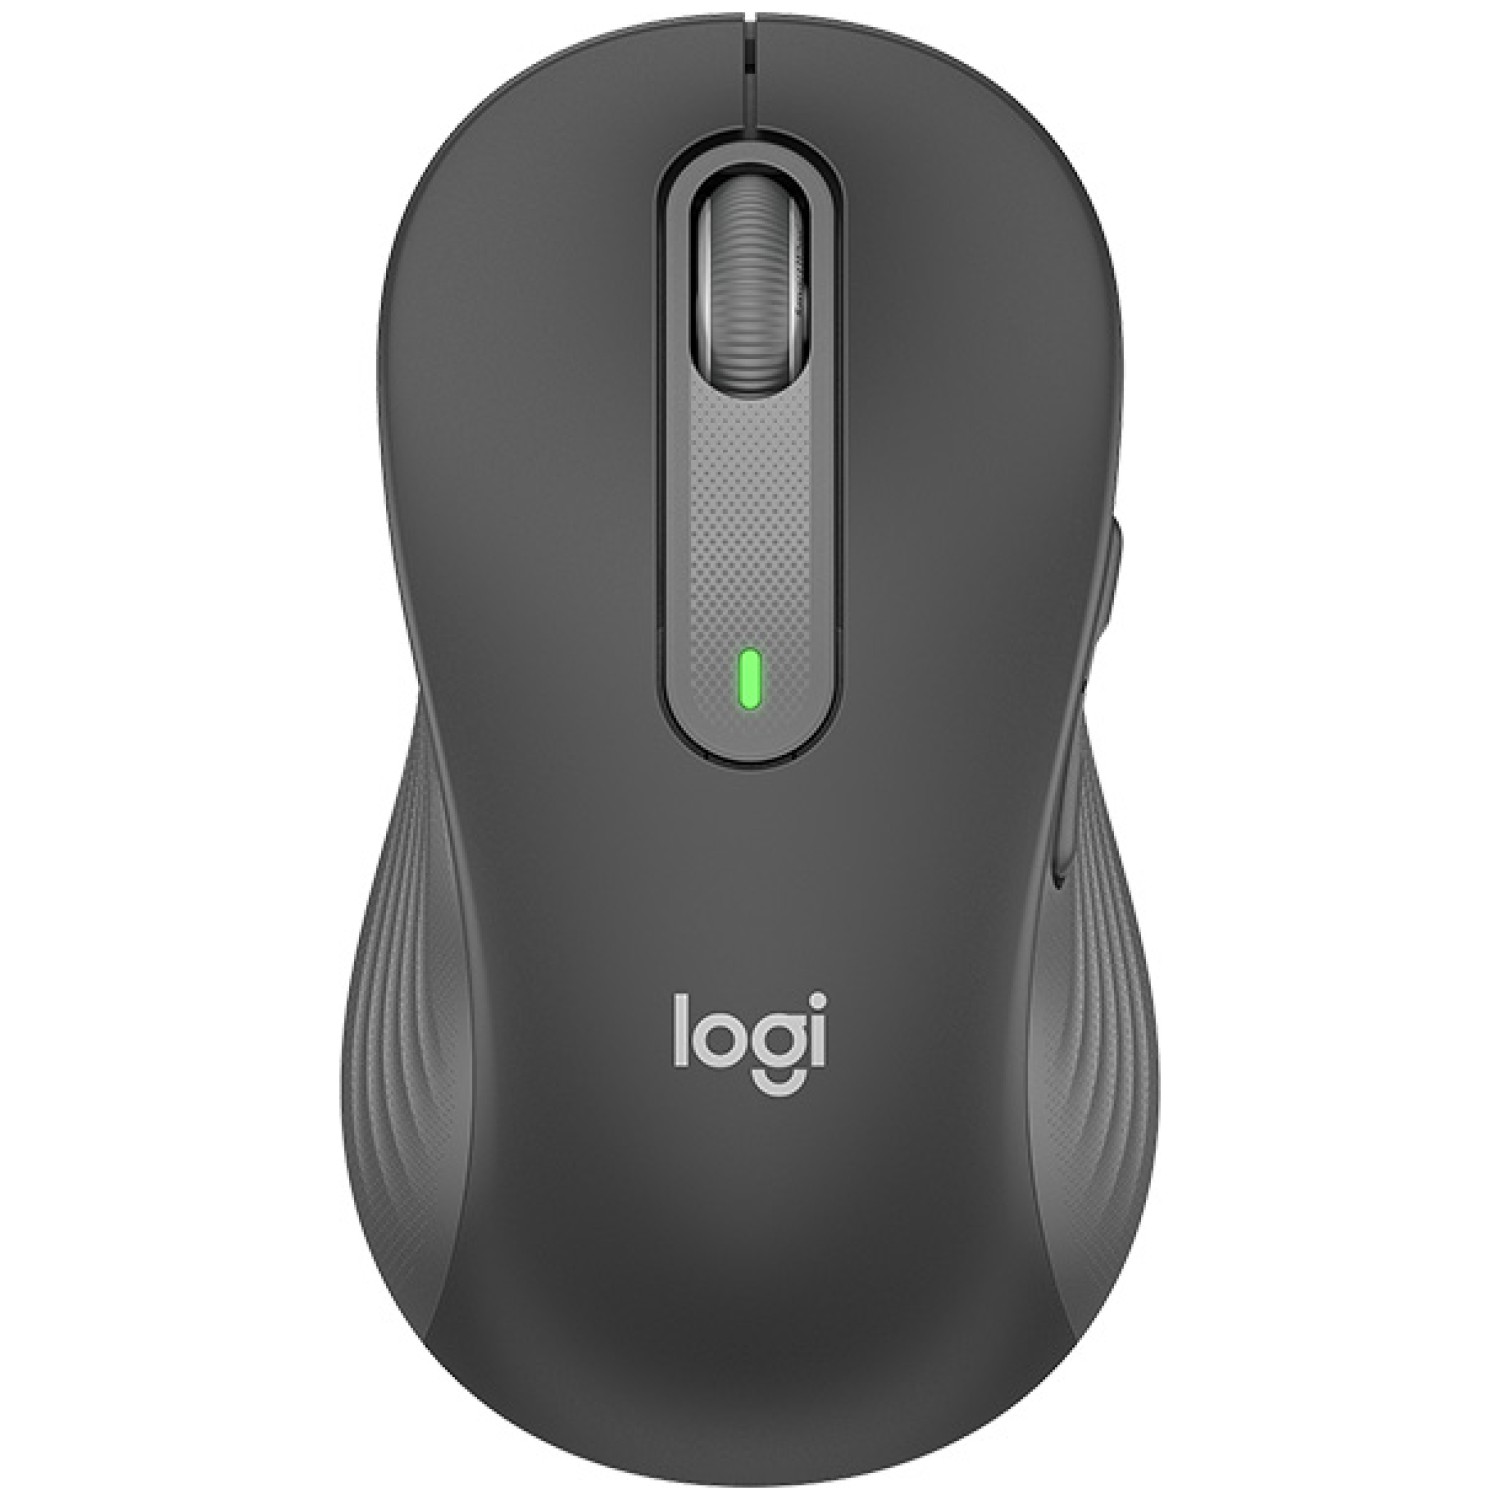 Miš brezžična + Bluetooth za levičarje Logitech M650 2000DPI Signature velikost L grafitna (910-006239)